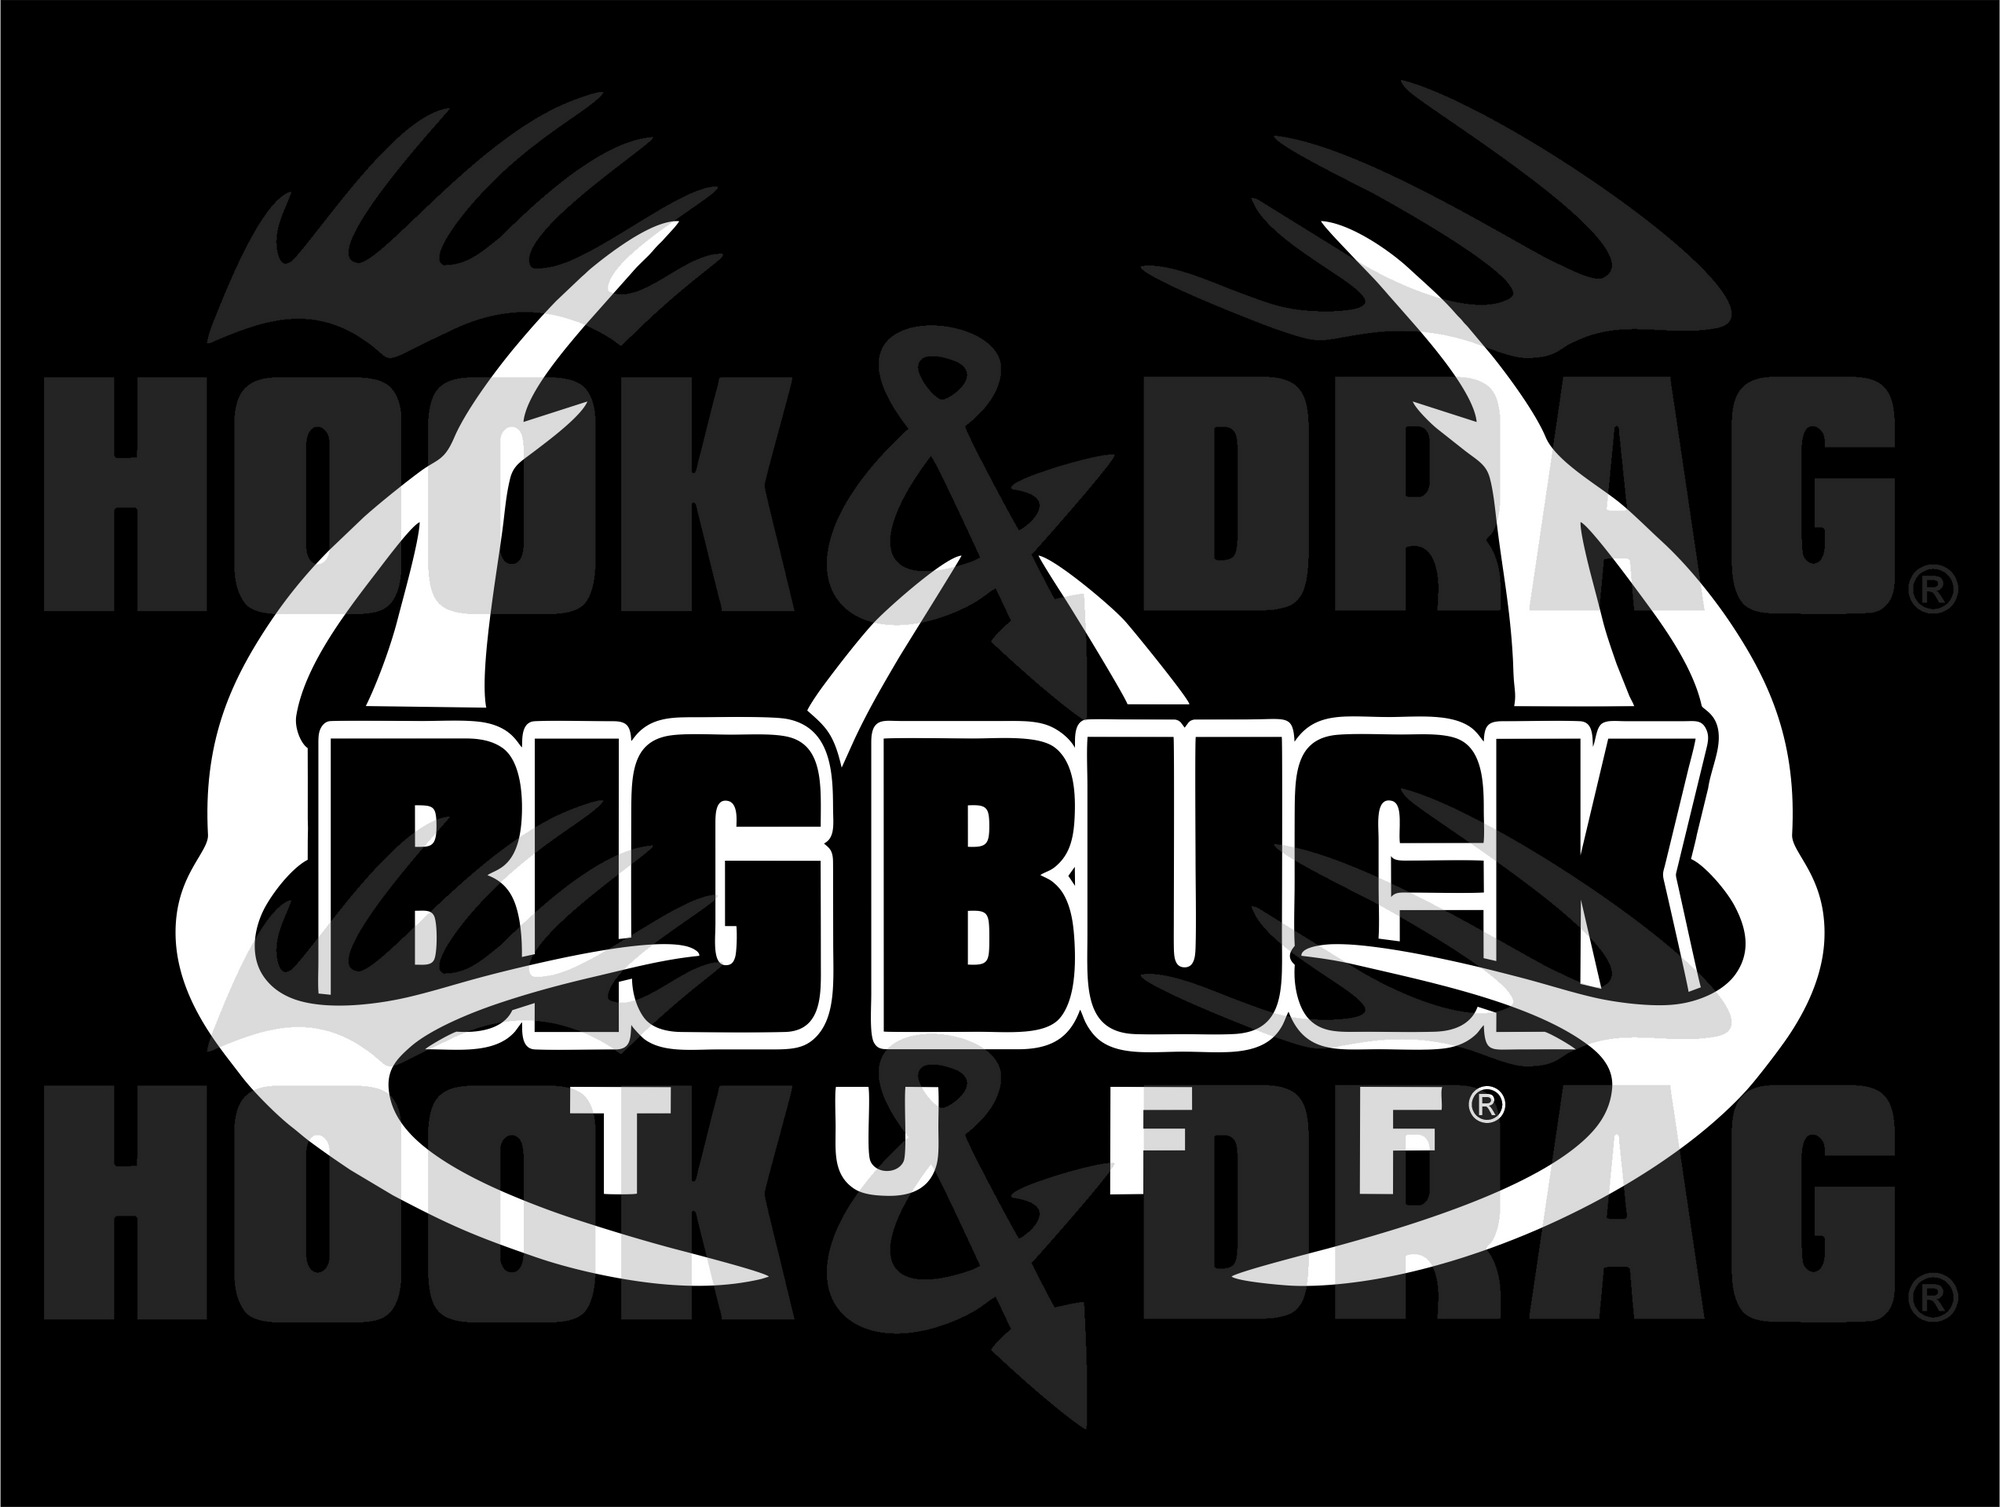 Big Buck Tuff 7.5 x 5.5 Decal  - White